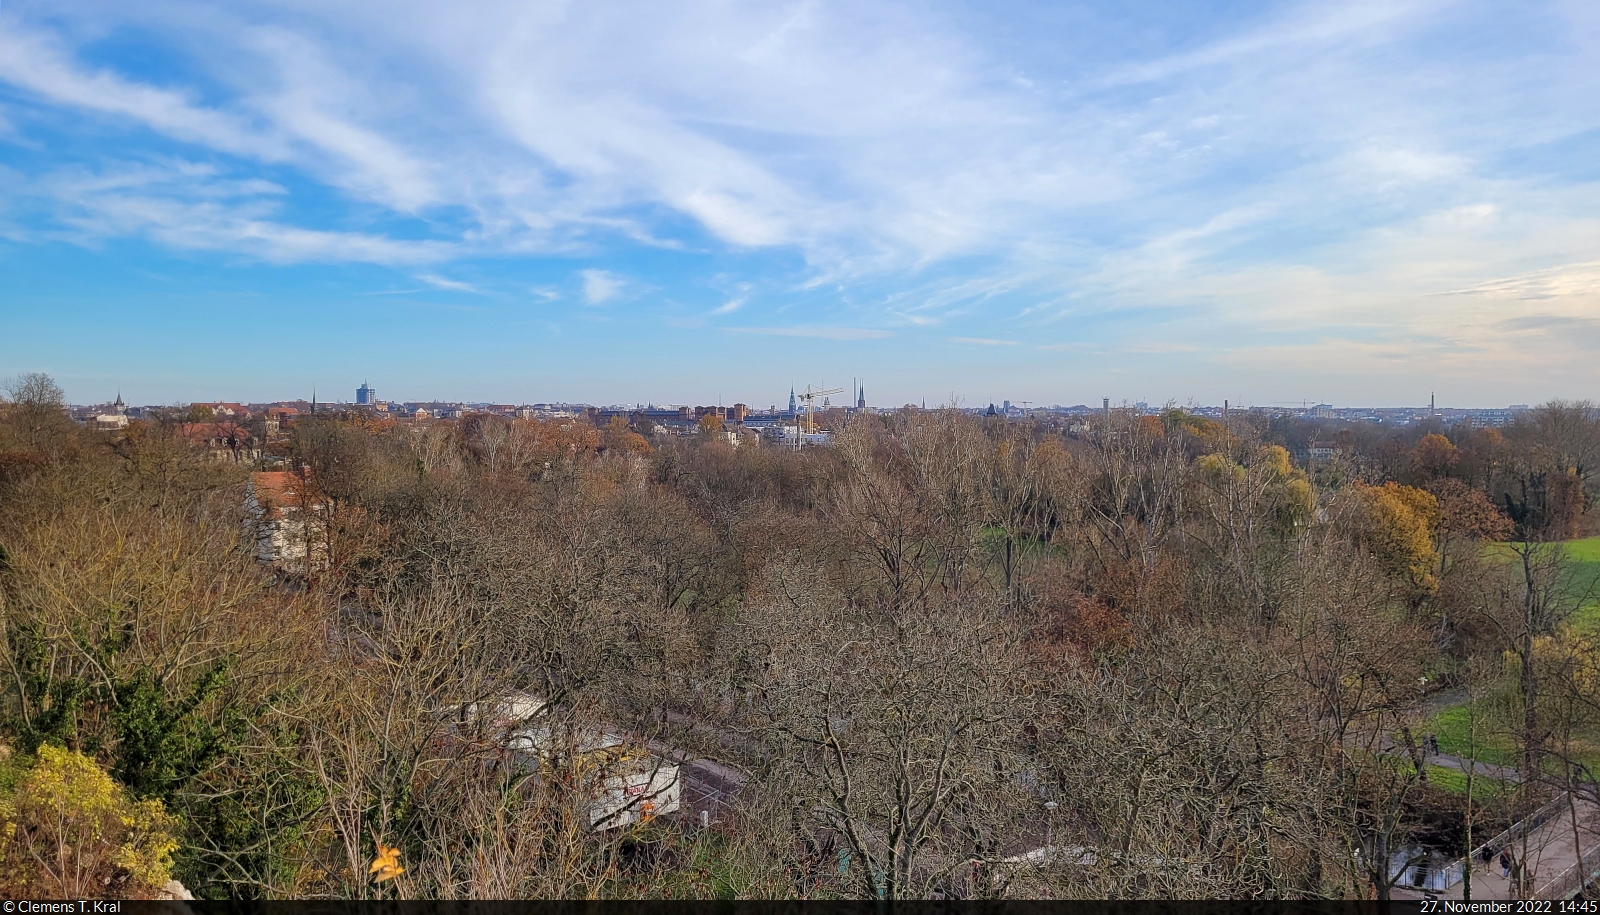 Ausblick vom Lehmannsfelsen am Heinrich-Heine-Park auf die Innenstadt von Halle (Saale).

🕓 27.11.2022 | 14:45 Uhr